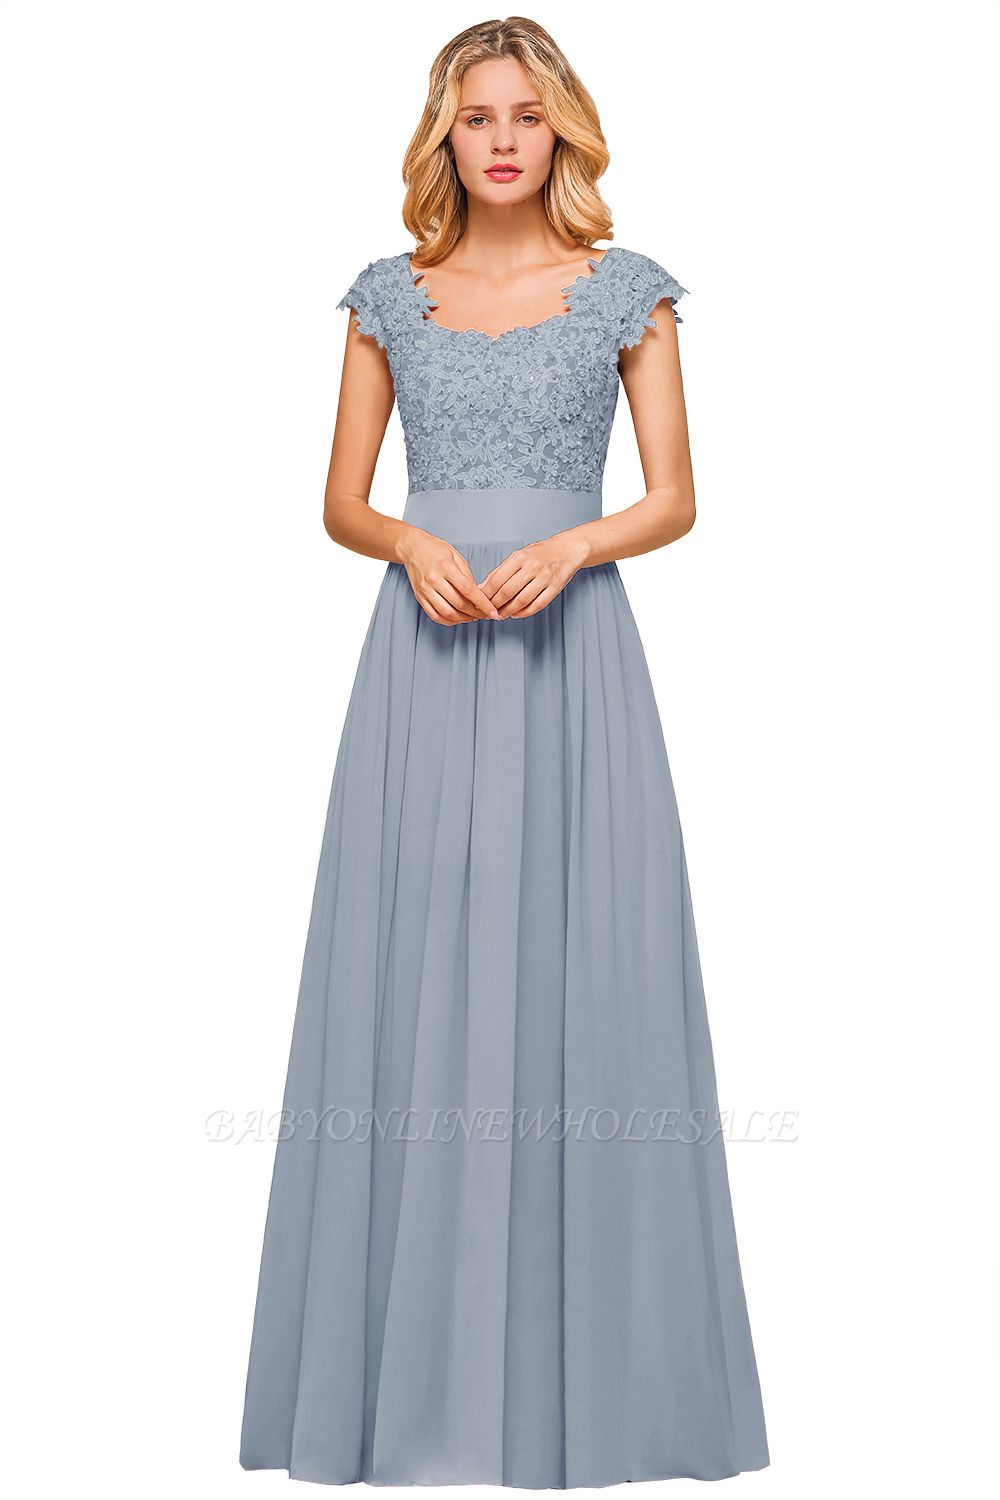 Burgunder Flügelärmel Spitze Abendkleider mit Applikationen | Günstige Chiffon Langes Kleid für die Brautmutter